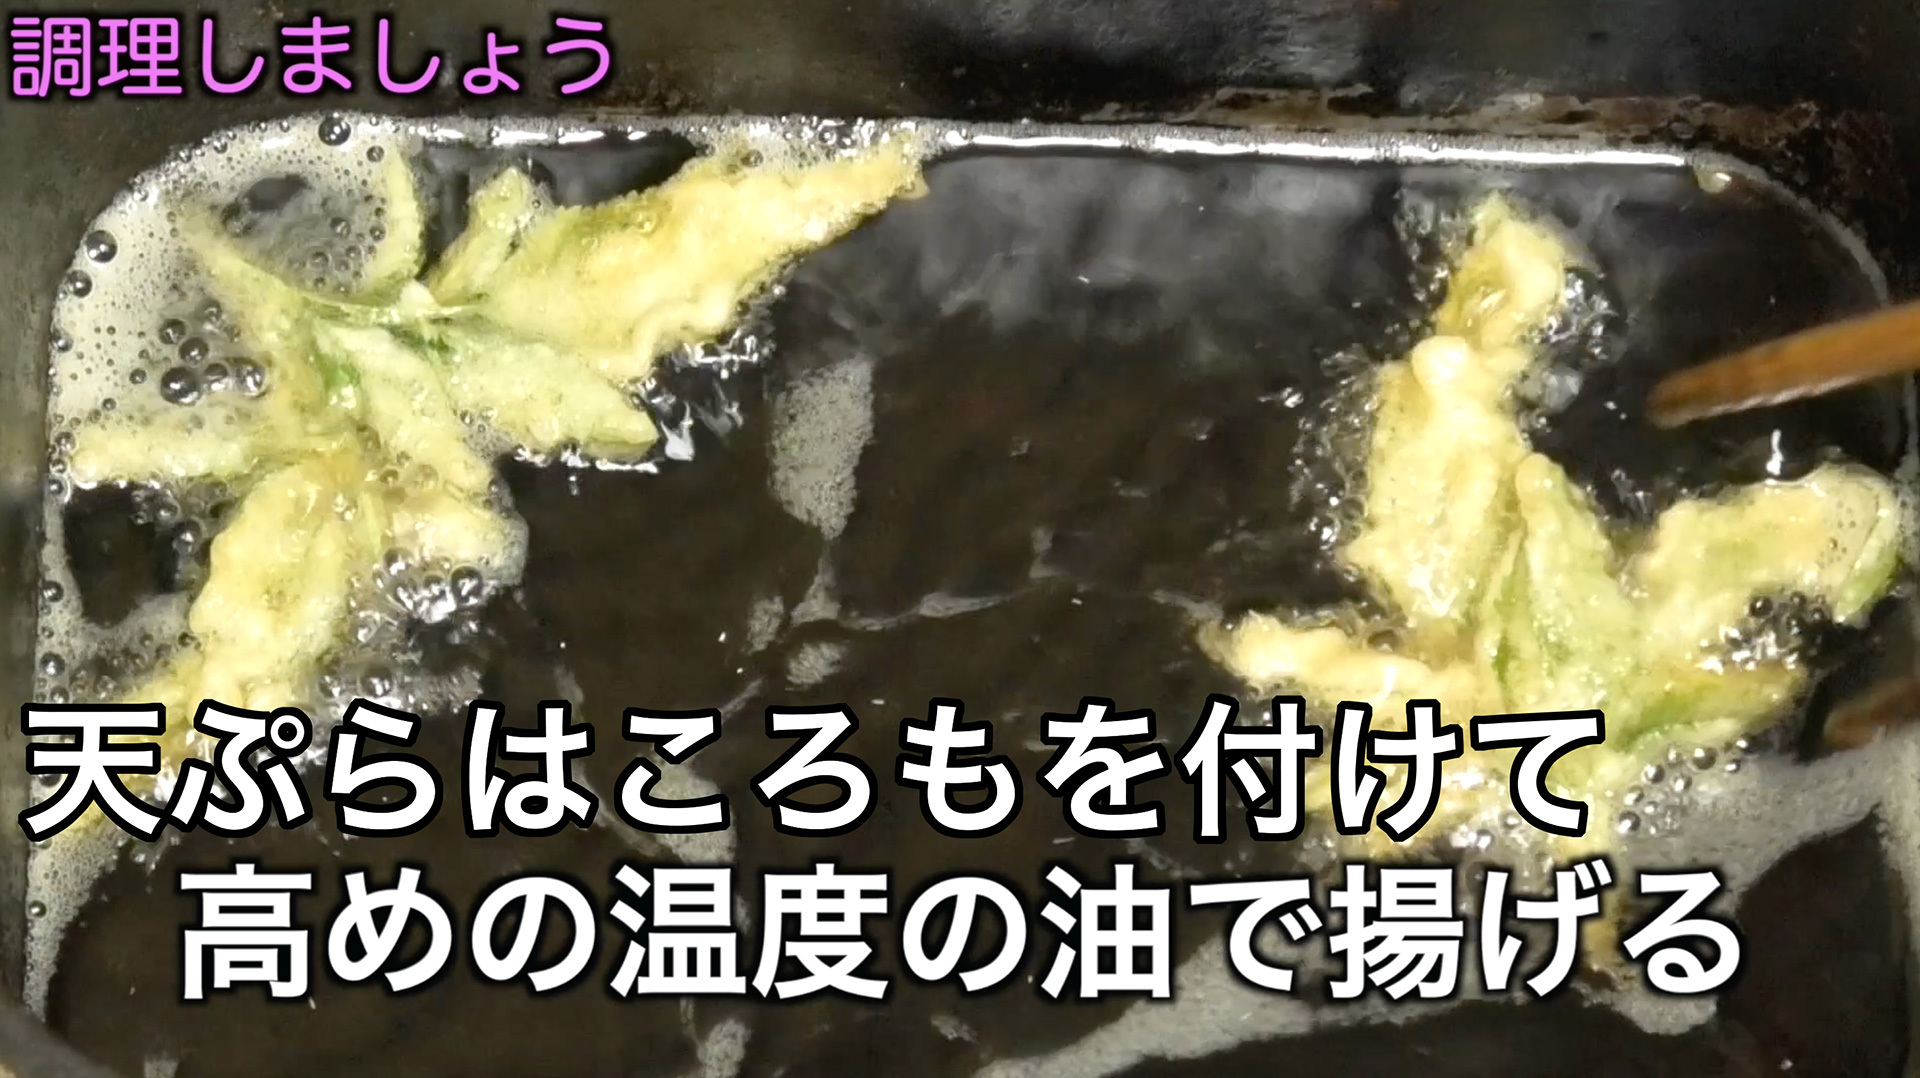 衣を付けて高めの温度の油で揚げればコセンダングサの芽の天ぷらの出来上がり